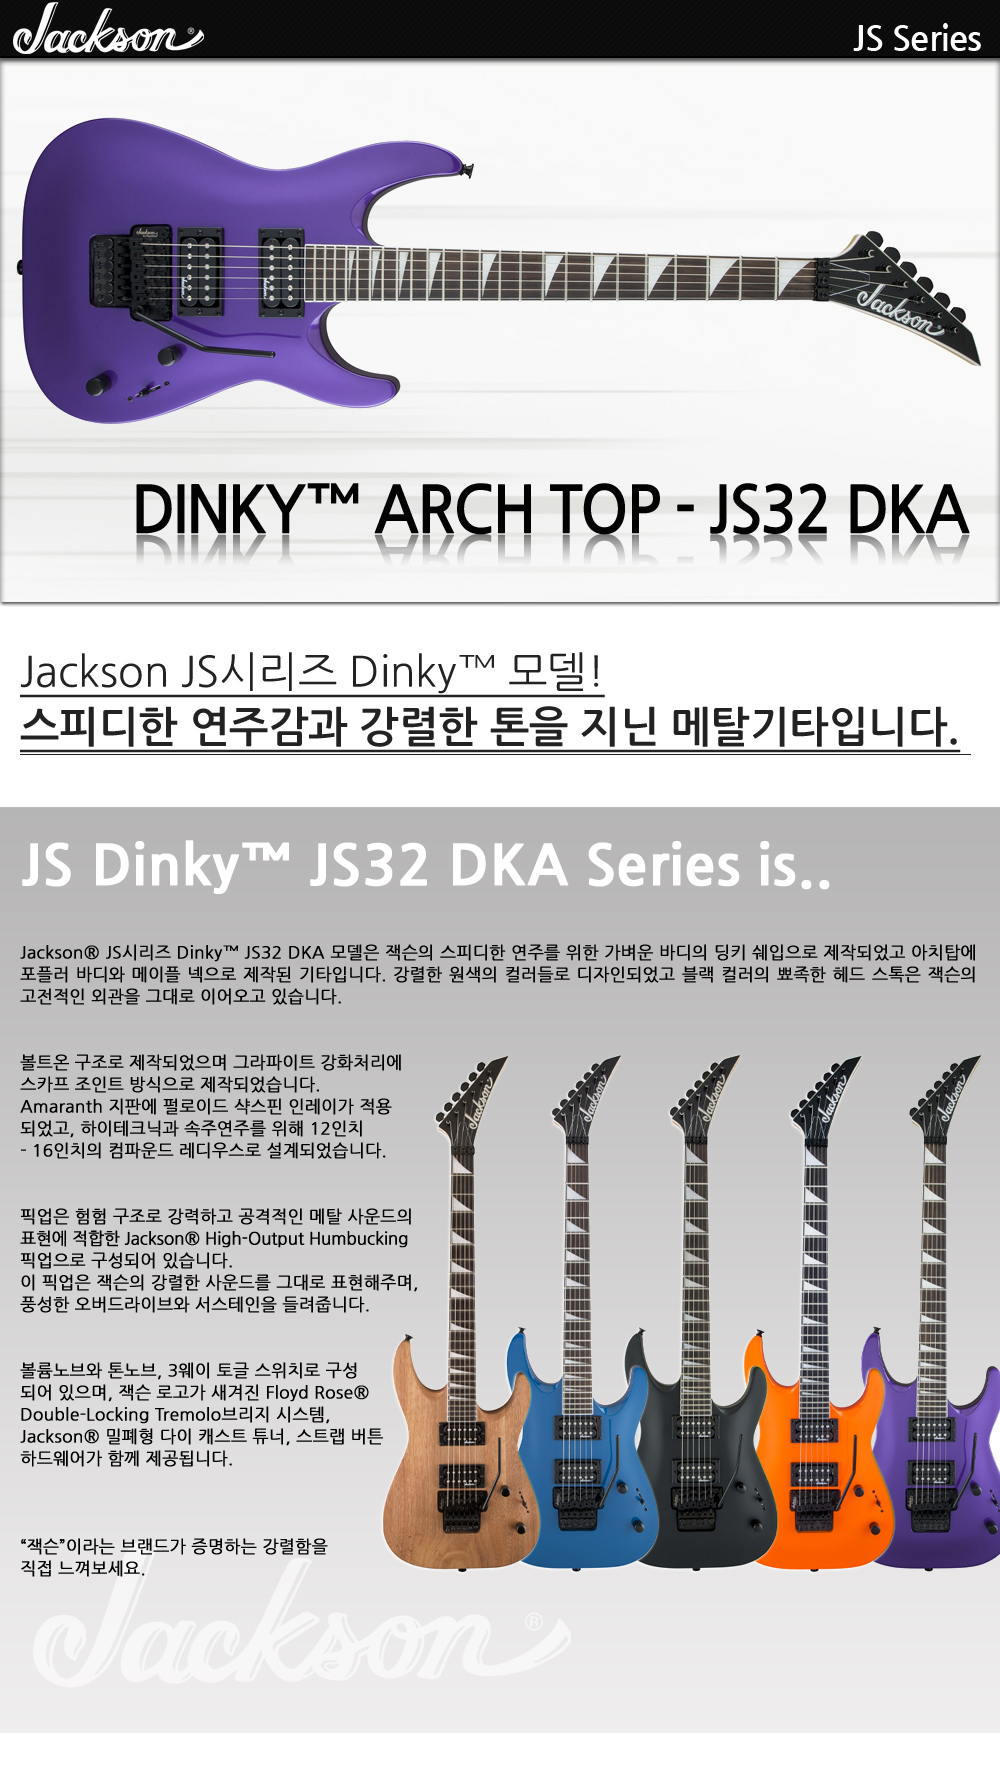 Jackson-JS-Dinky-JS32-DKA-PavoPurple_1_114319.jpg